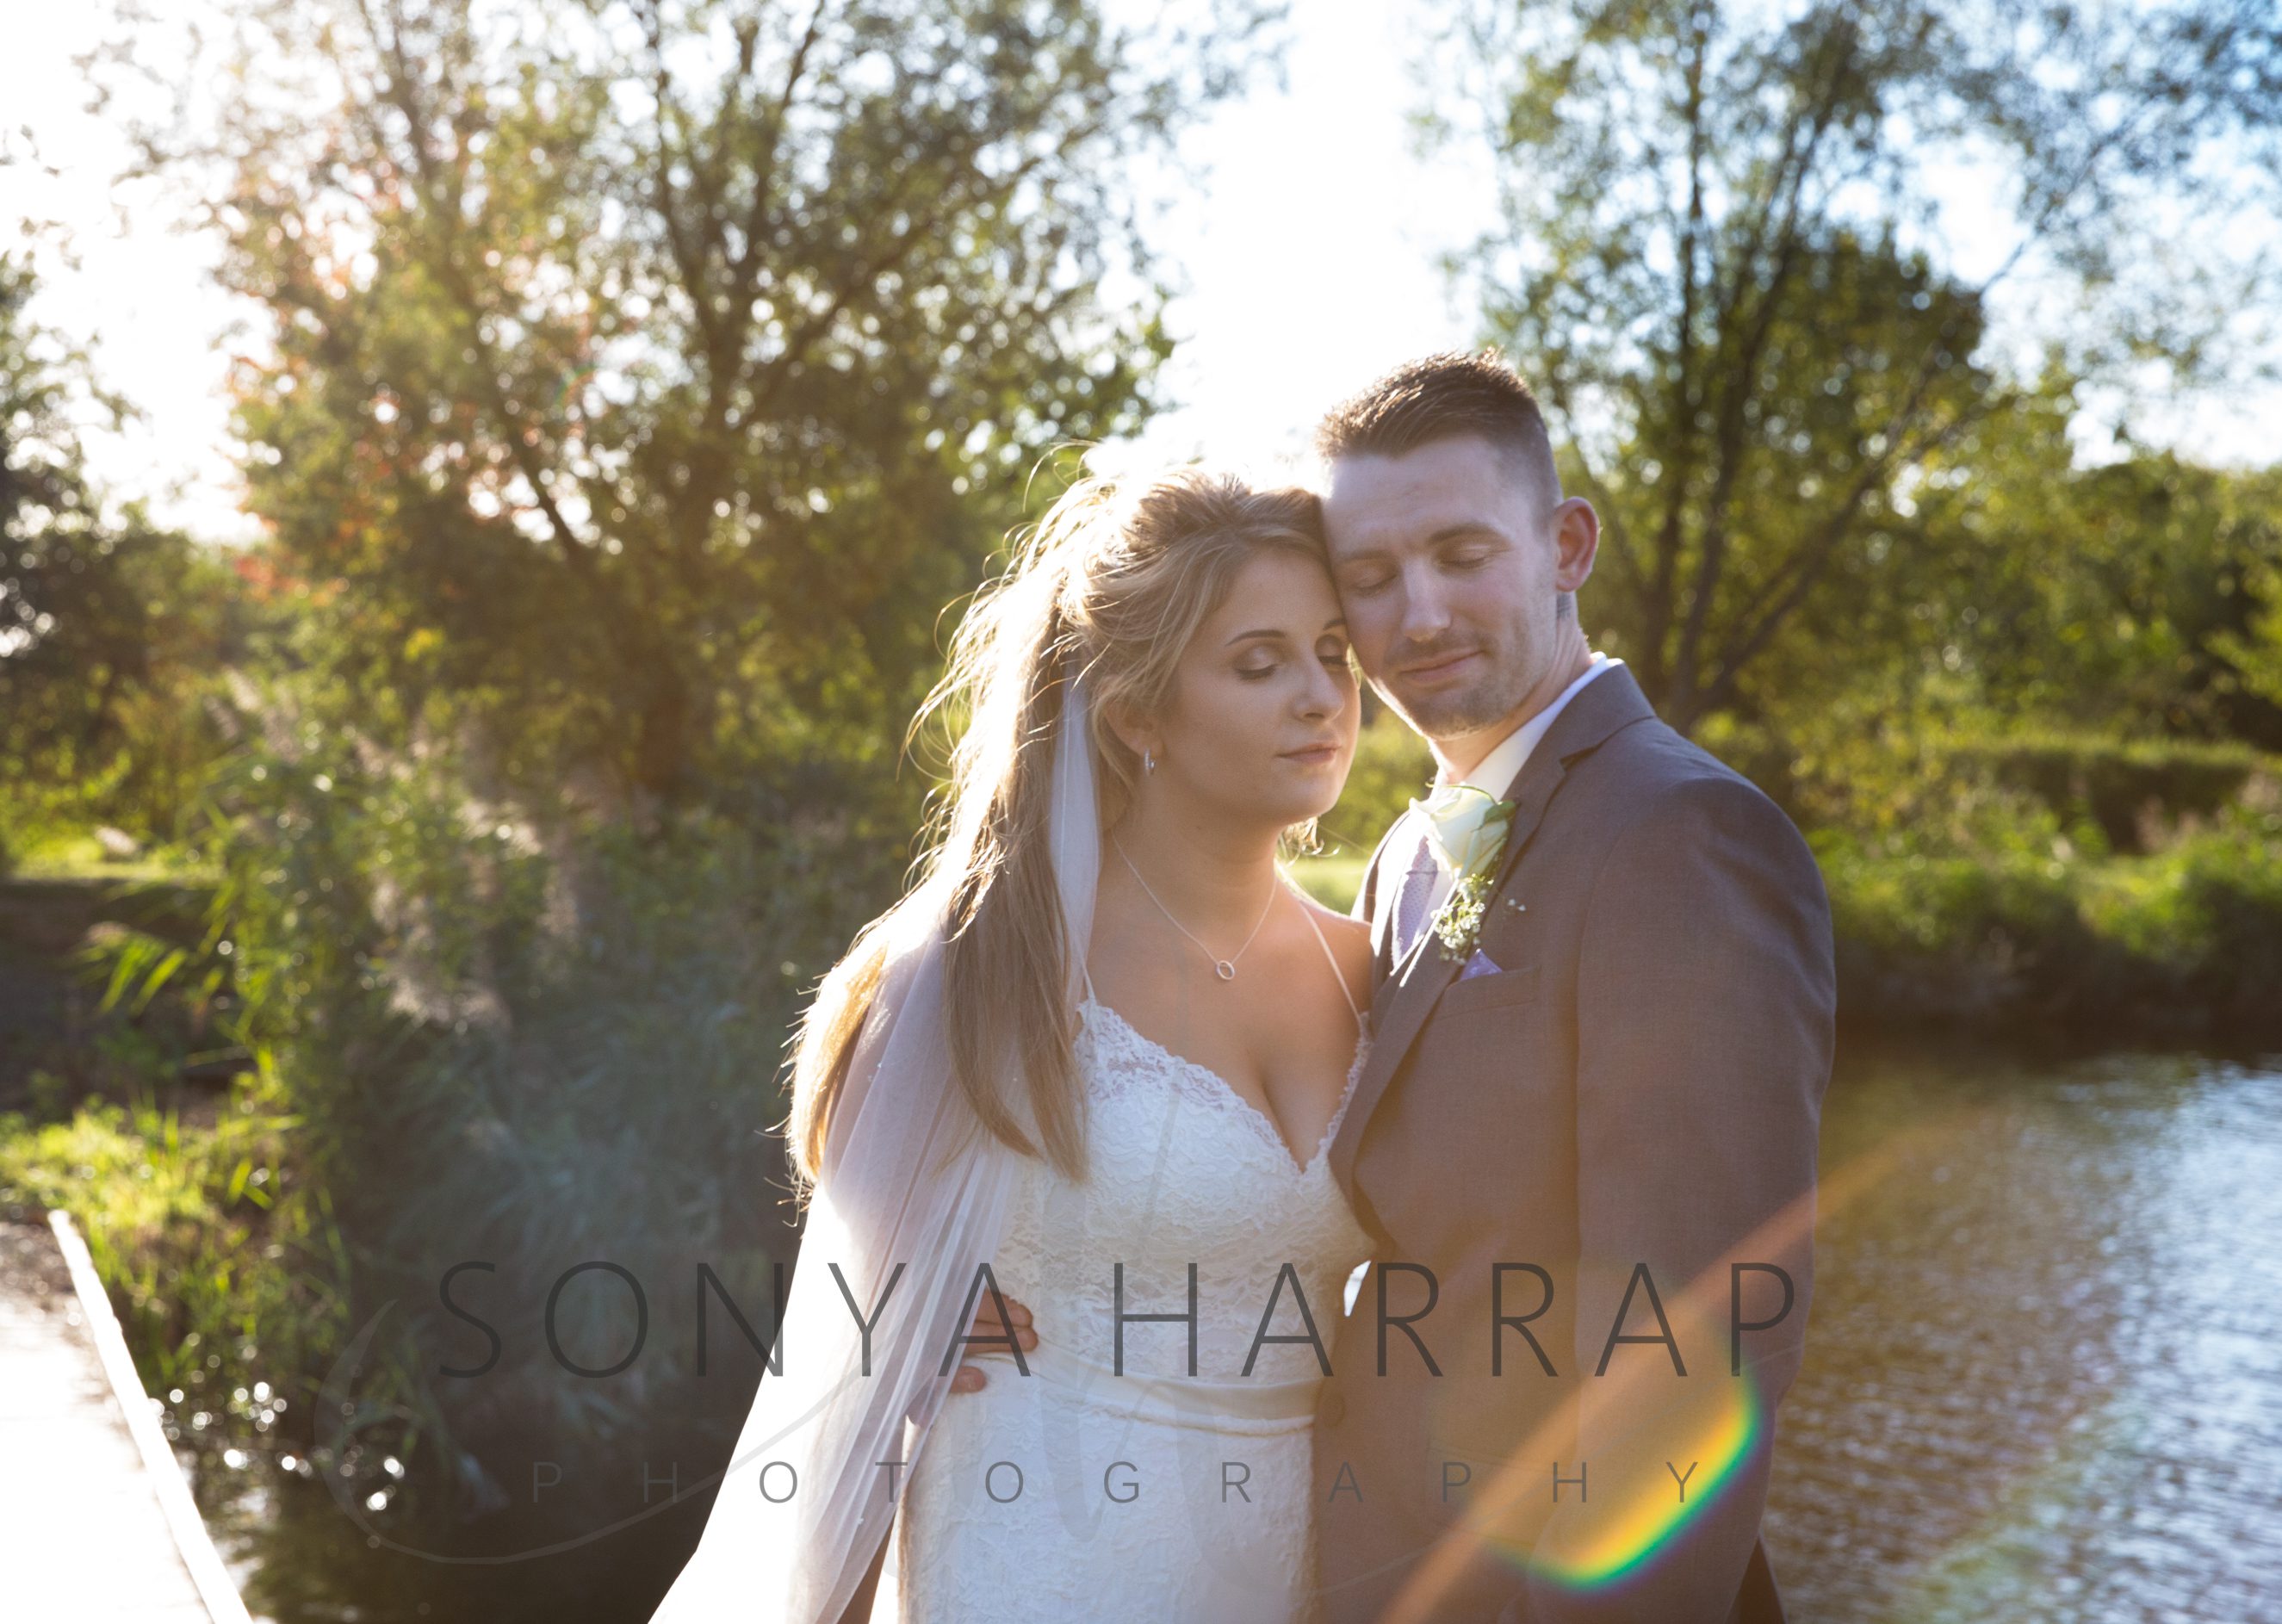 Hertfordshire wedding Photography 2020 2021 Sonya Harrap